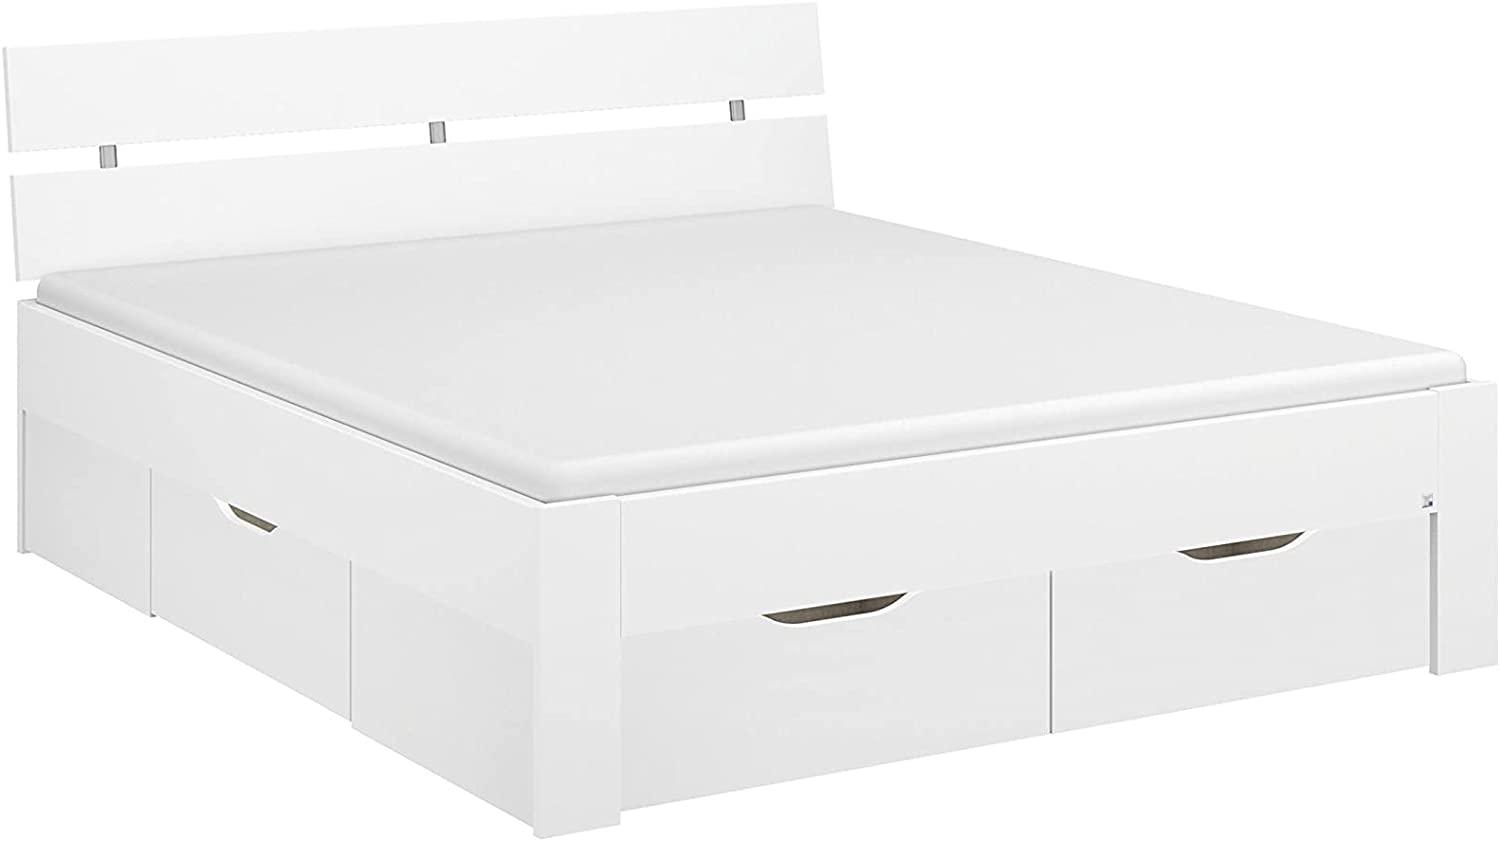 Rauch Möbel Ryba Bett Stauraumbett mit 4 Schubkästen in Weiß, Liegefläche 180x200 cm, Gesamtmaße BxHxT 185x88x215 cm Bild 1